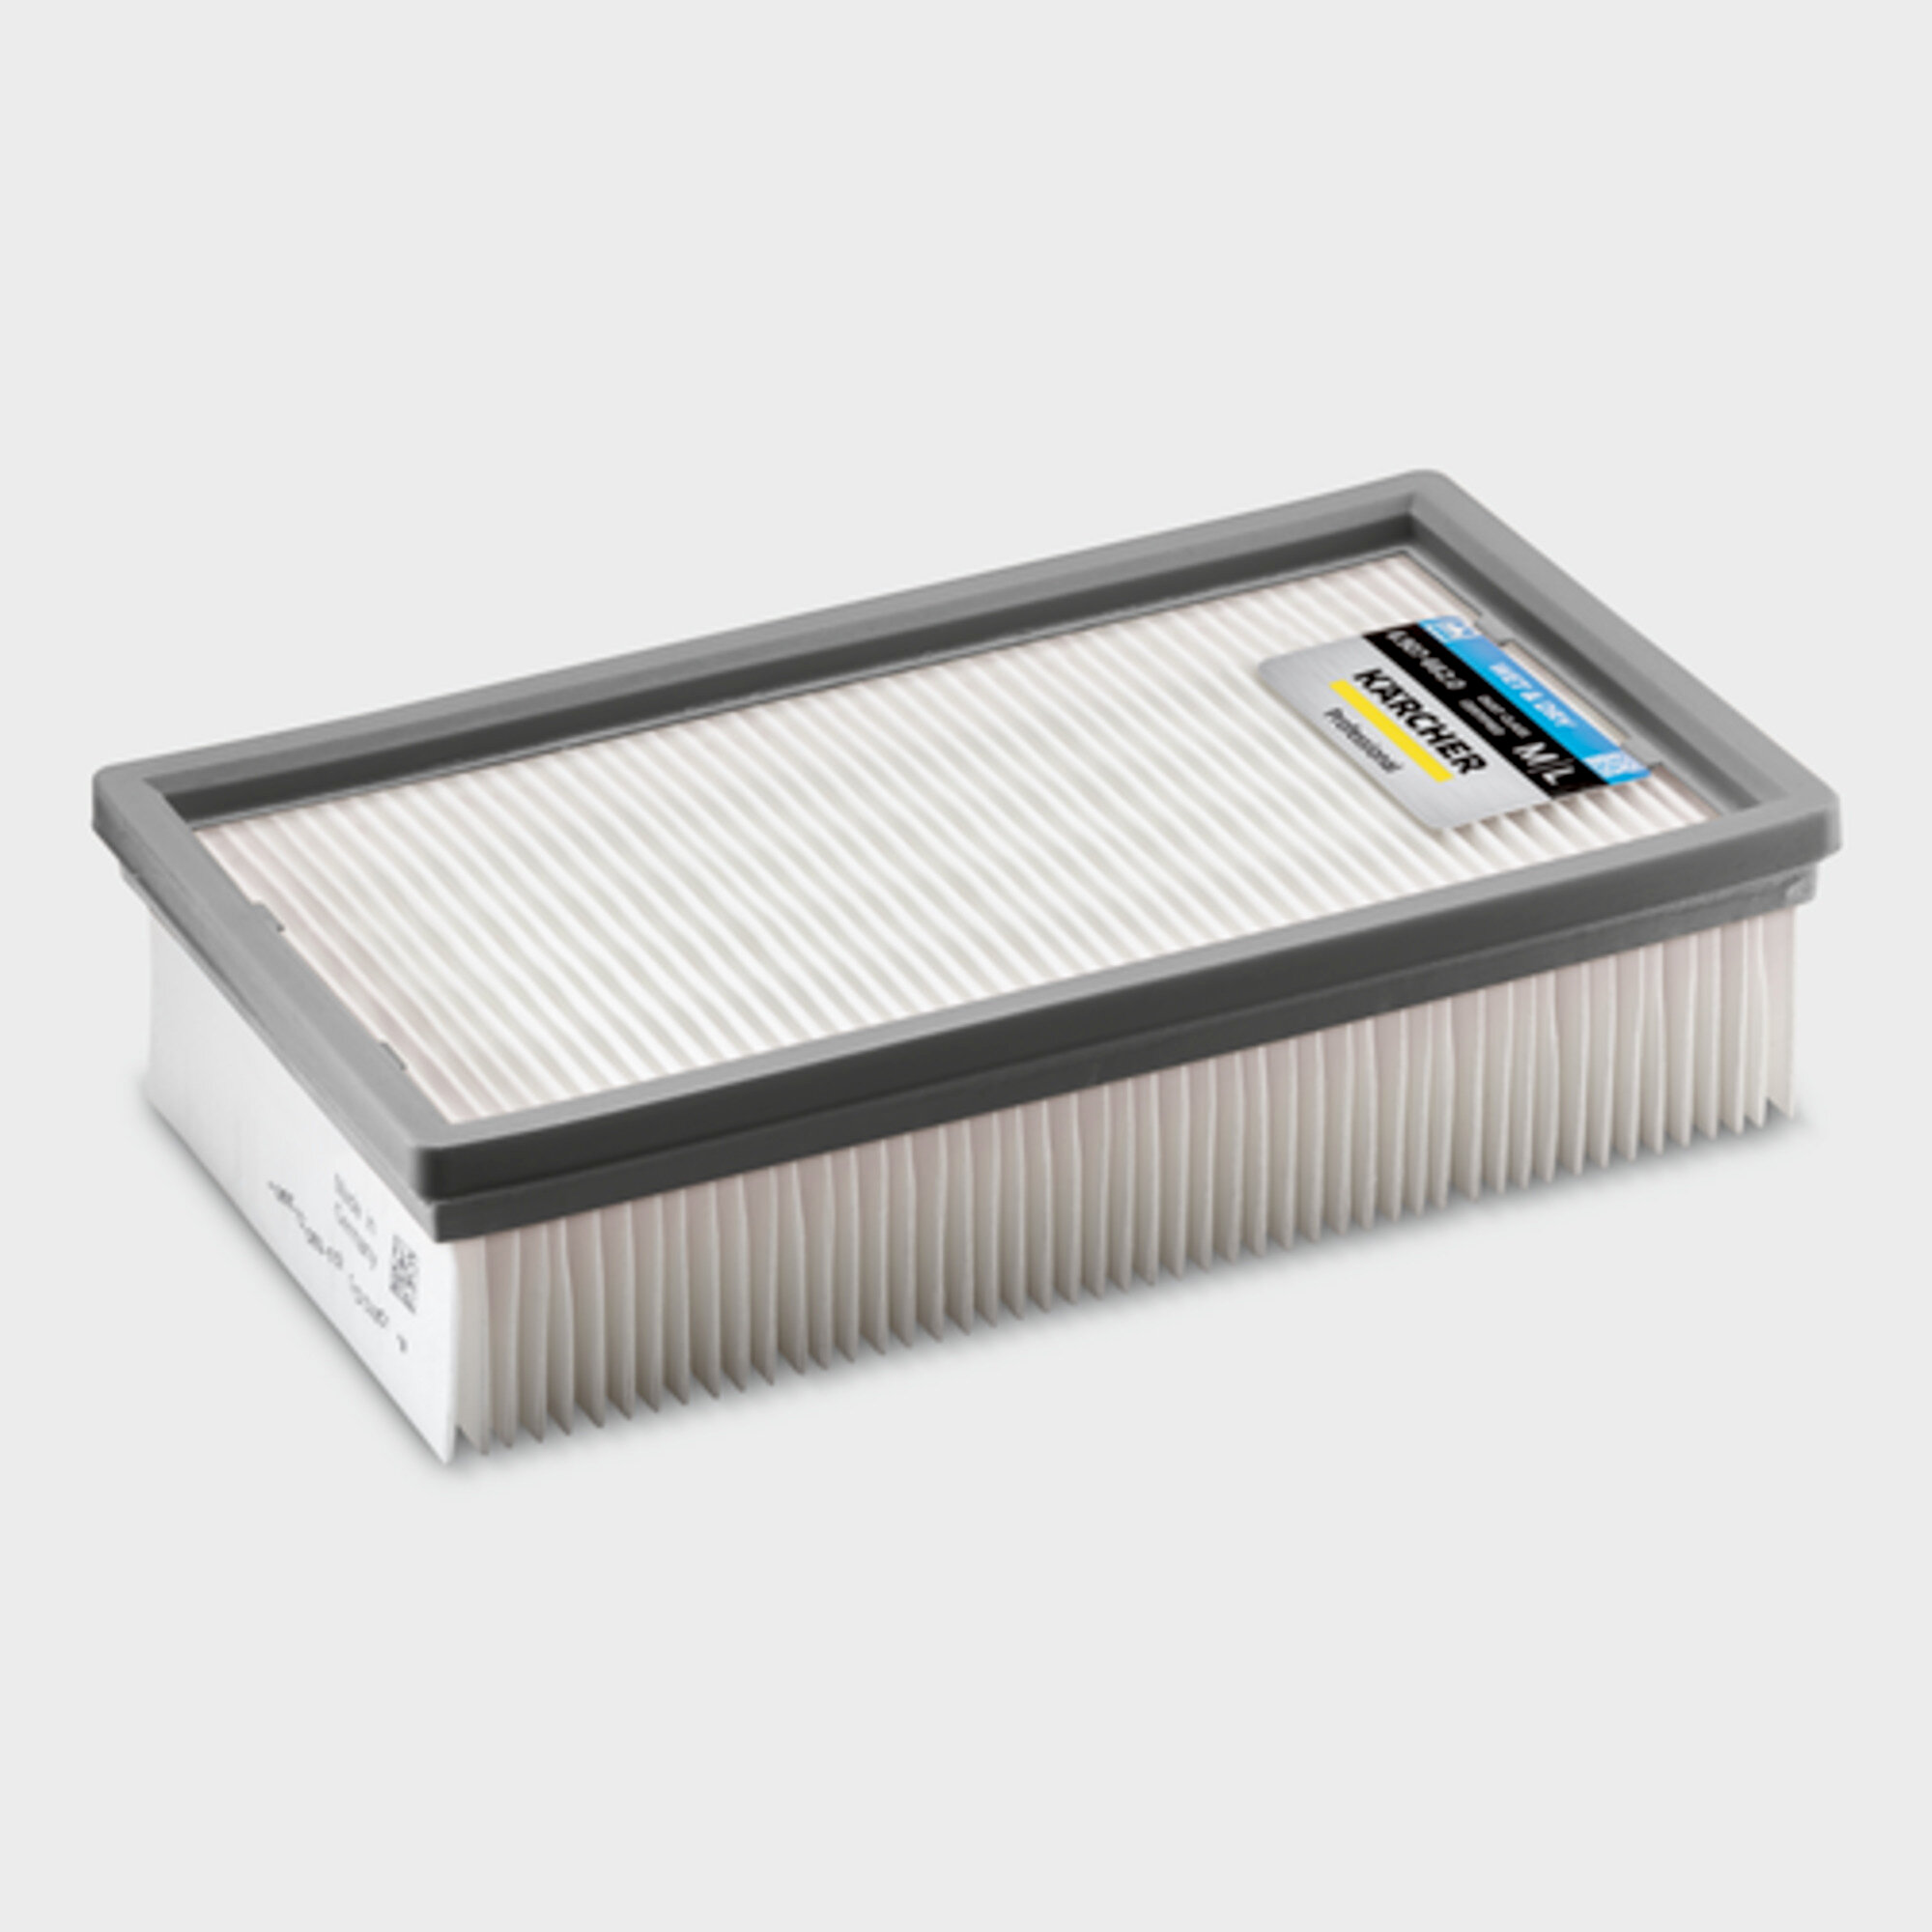 Mokro suchý vysávač Mokro-suchý vysávač NT 40/1 Tact Bs: PES plochý skladaný filter odolný voči teplu